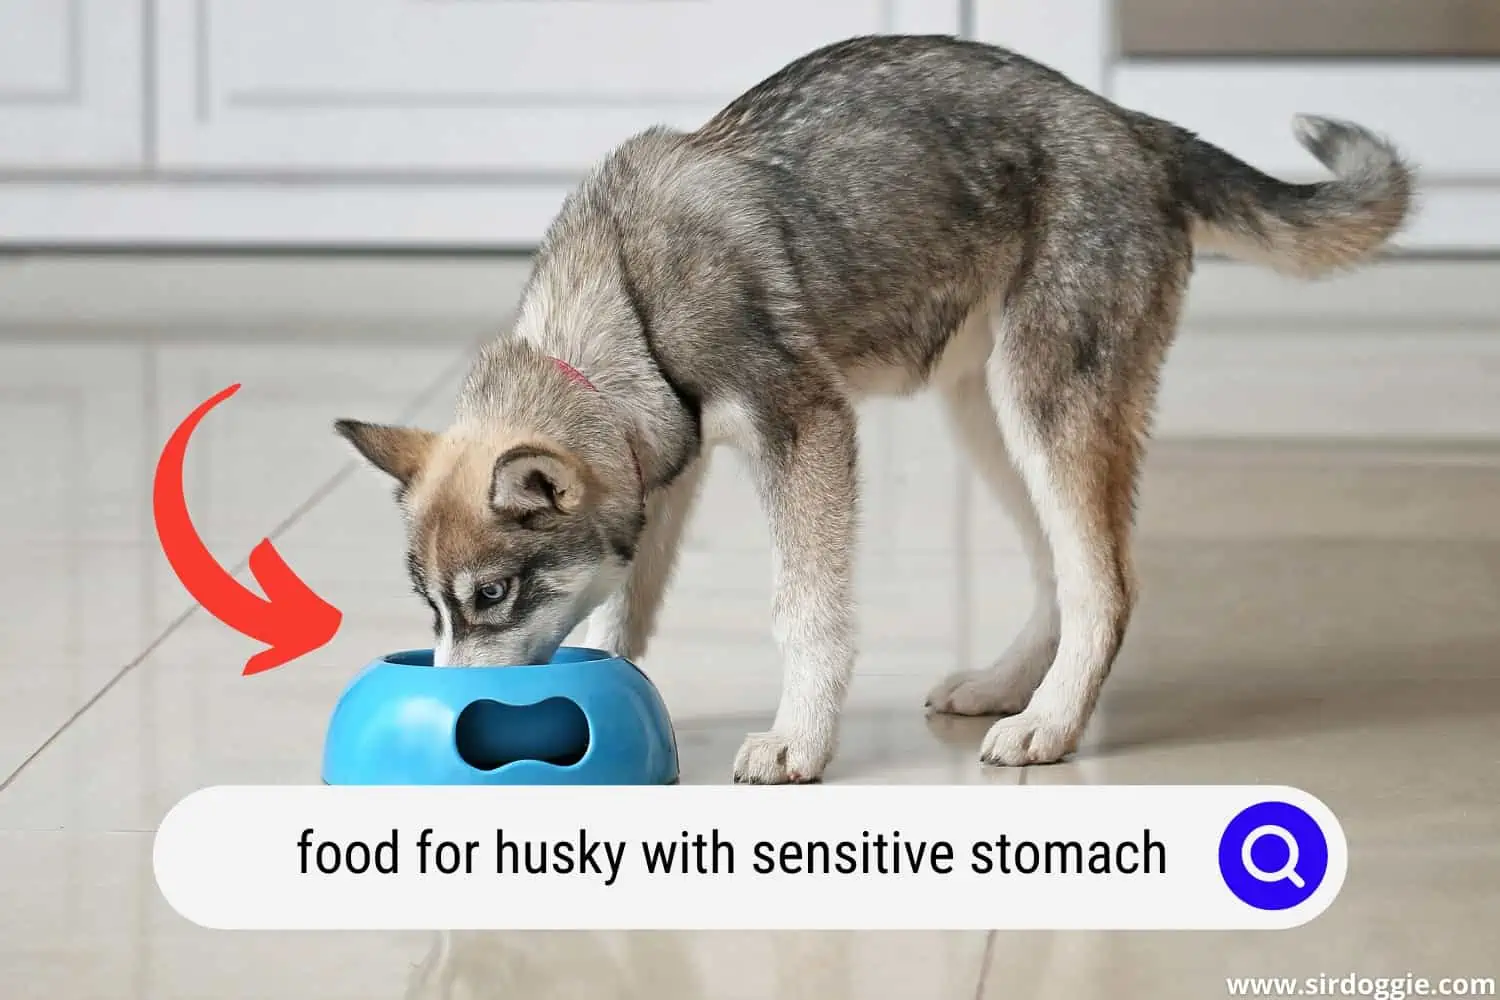 Husky eating dog food